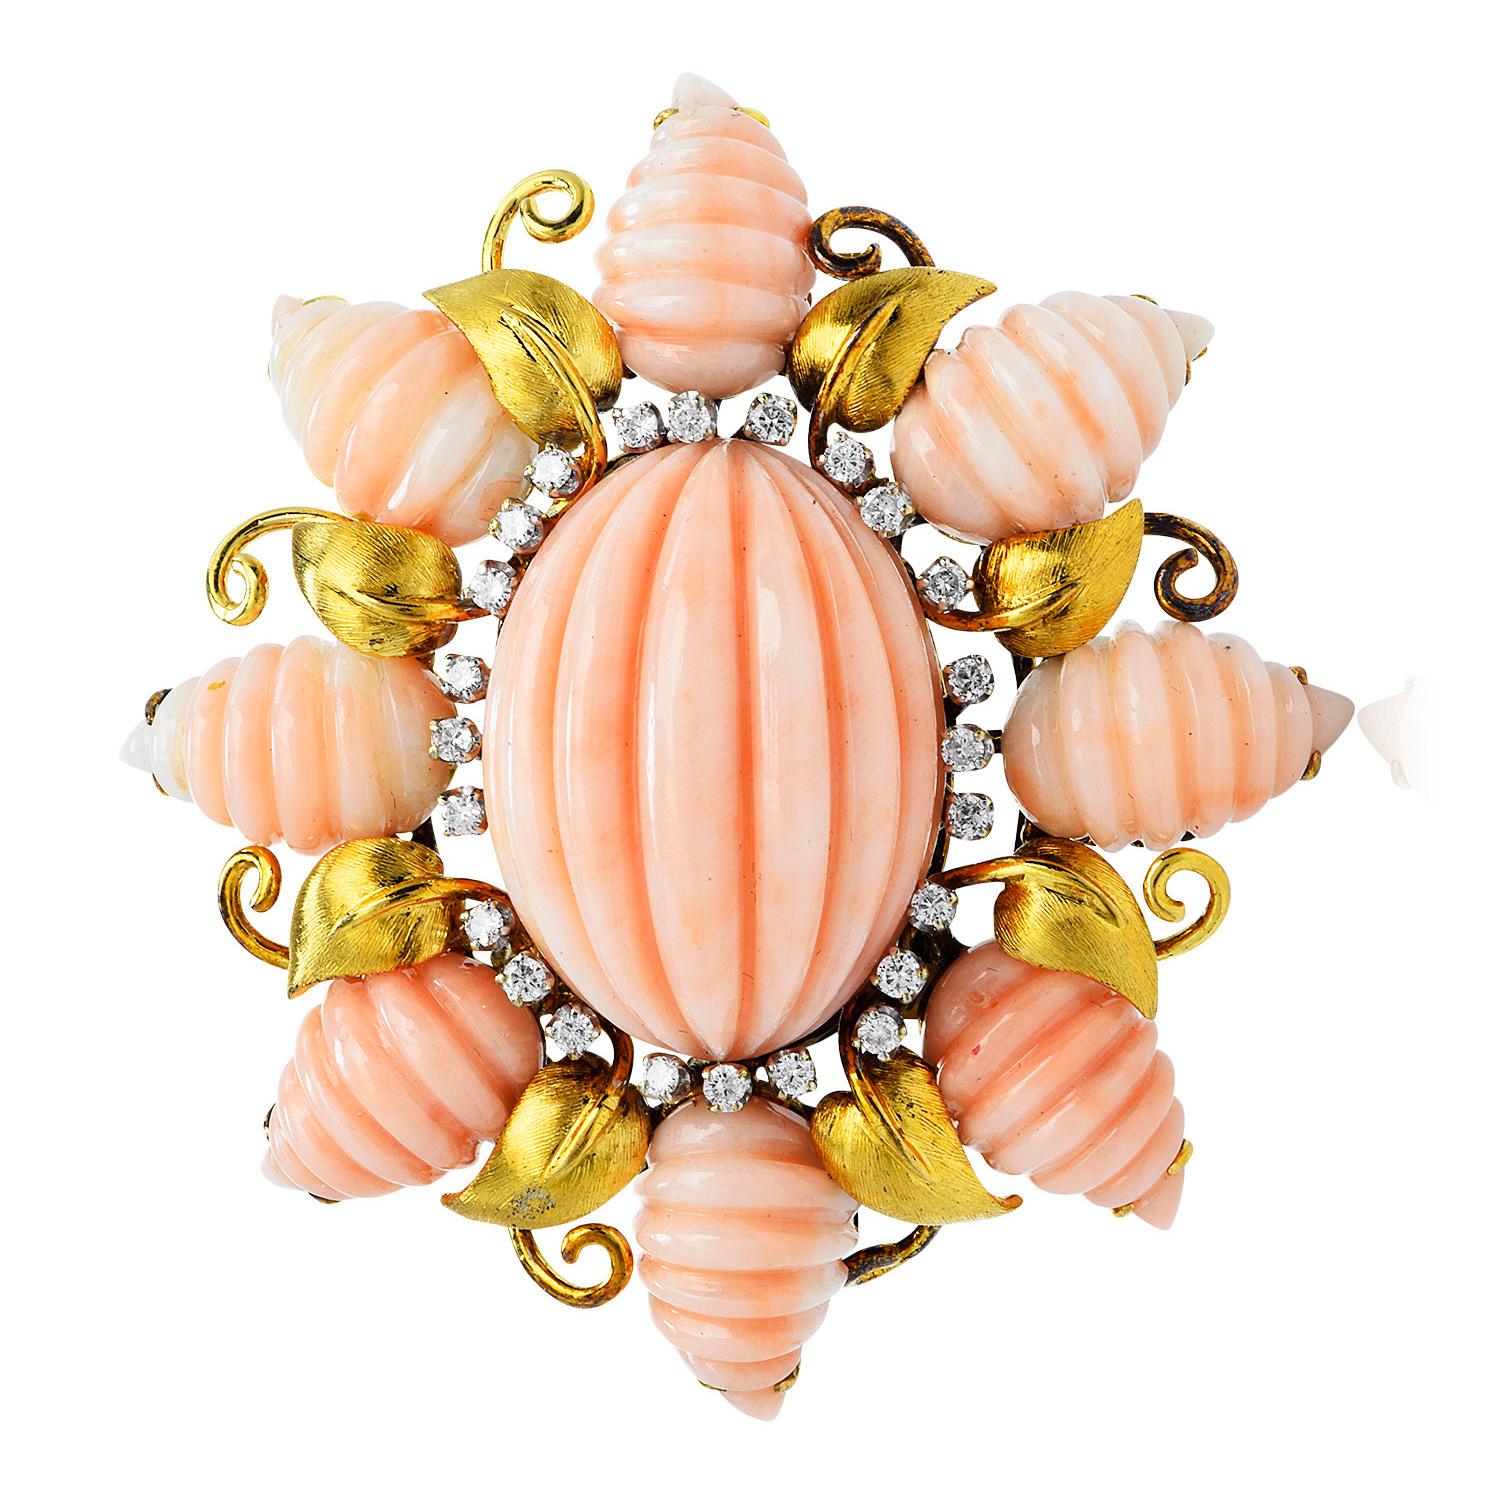 Mit einer exquisiten strukturierten Design von TRIO, diese bezaubernde Vintage rosa geschnitzt Koralle & Diamant Stück ist in massiven 18K Gelbgold gefertigt.
In der Mitte befindet sich ein echter Cabochon aus einer ovalen, kanalisierten rosa